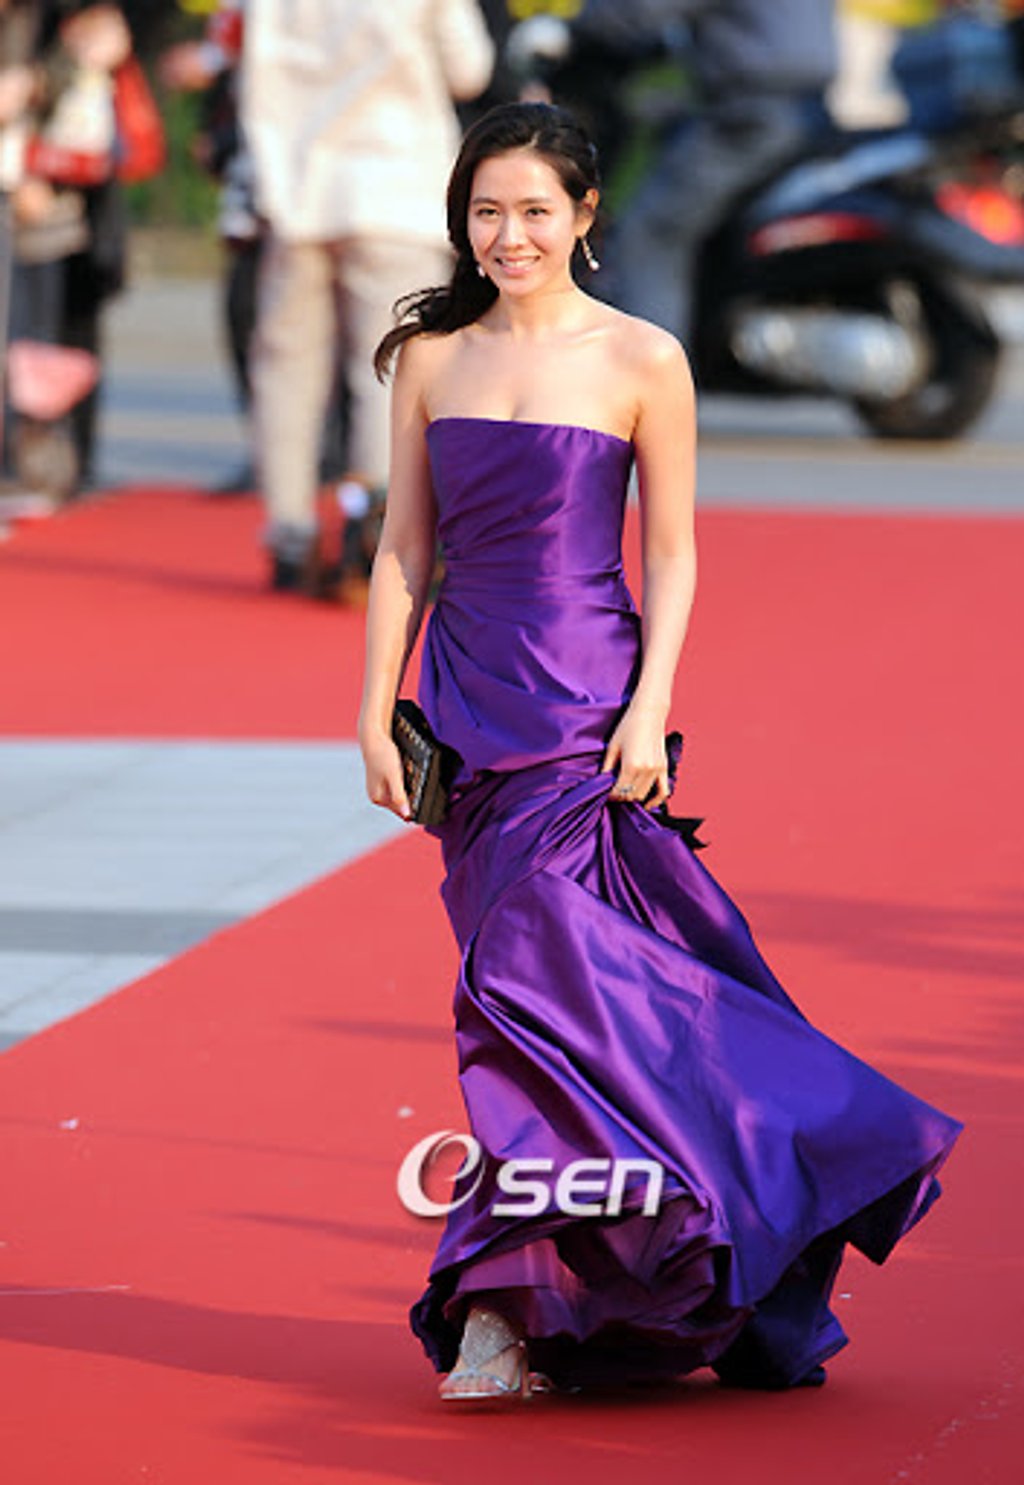 Năm 2008, chiếc đầm tím sắc nét đã mang đến cho nữ diễn viên diện mạo vô cùng sang trọng. Lựa chọn này cũng tôn lên được rất nhiều điểm mạnh của Son Ye Jin như làn da trắng ngần, vòng ngực đầy đặn hay bờ vai nuột nà.